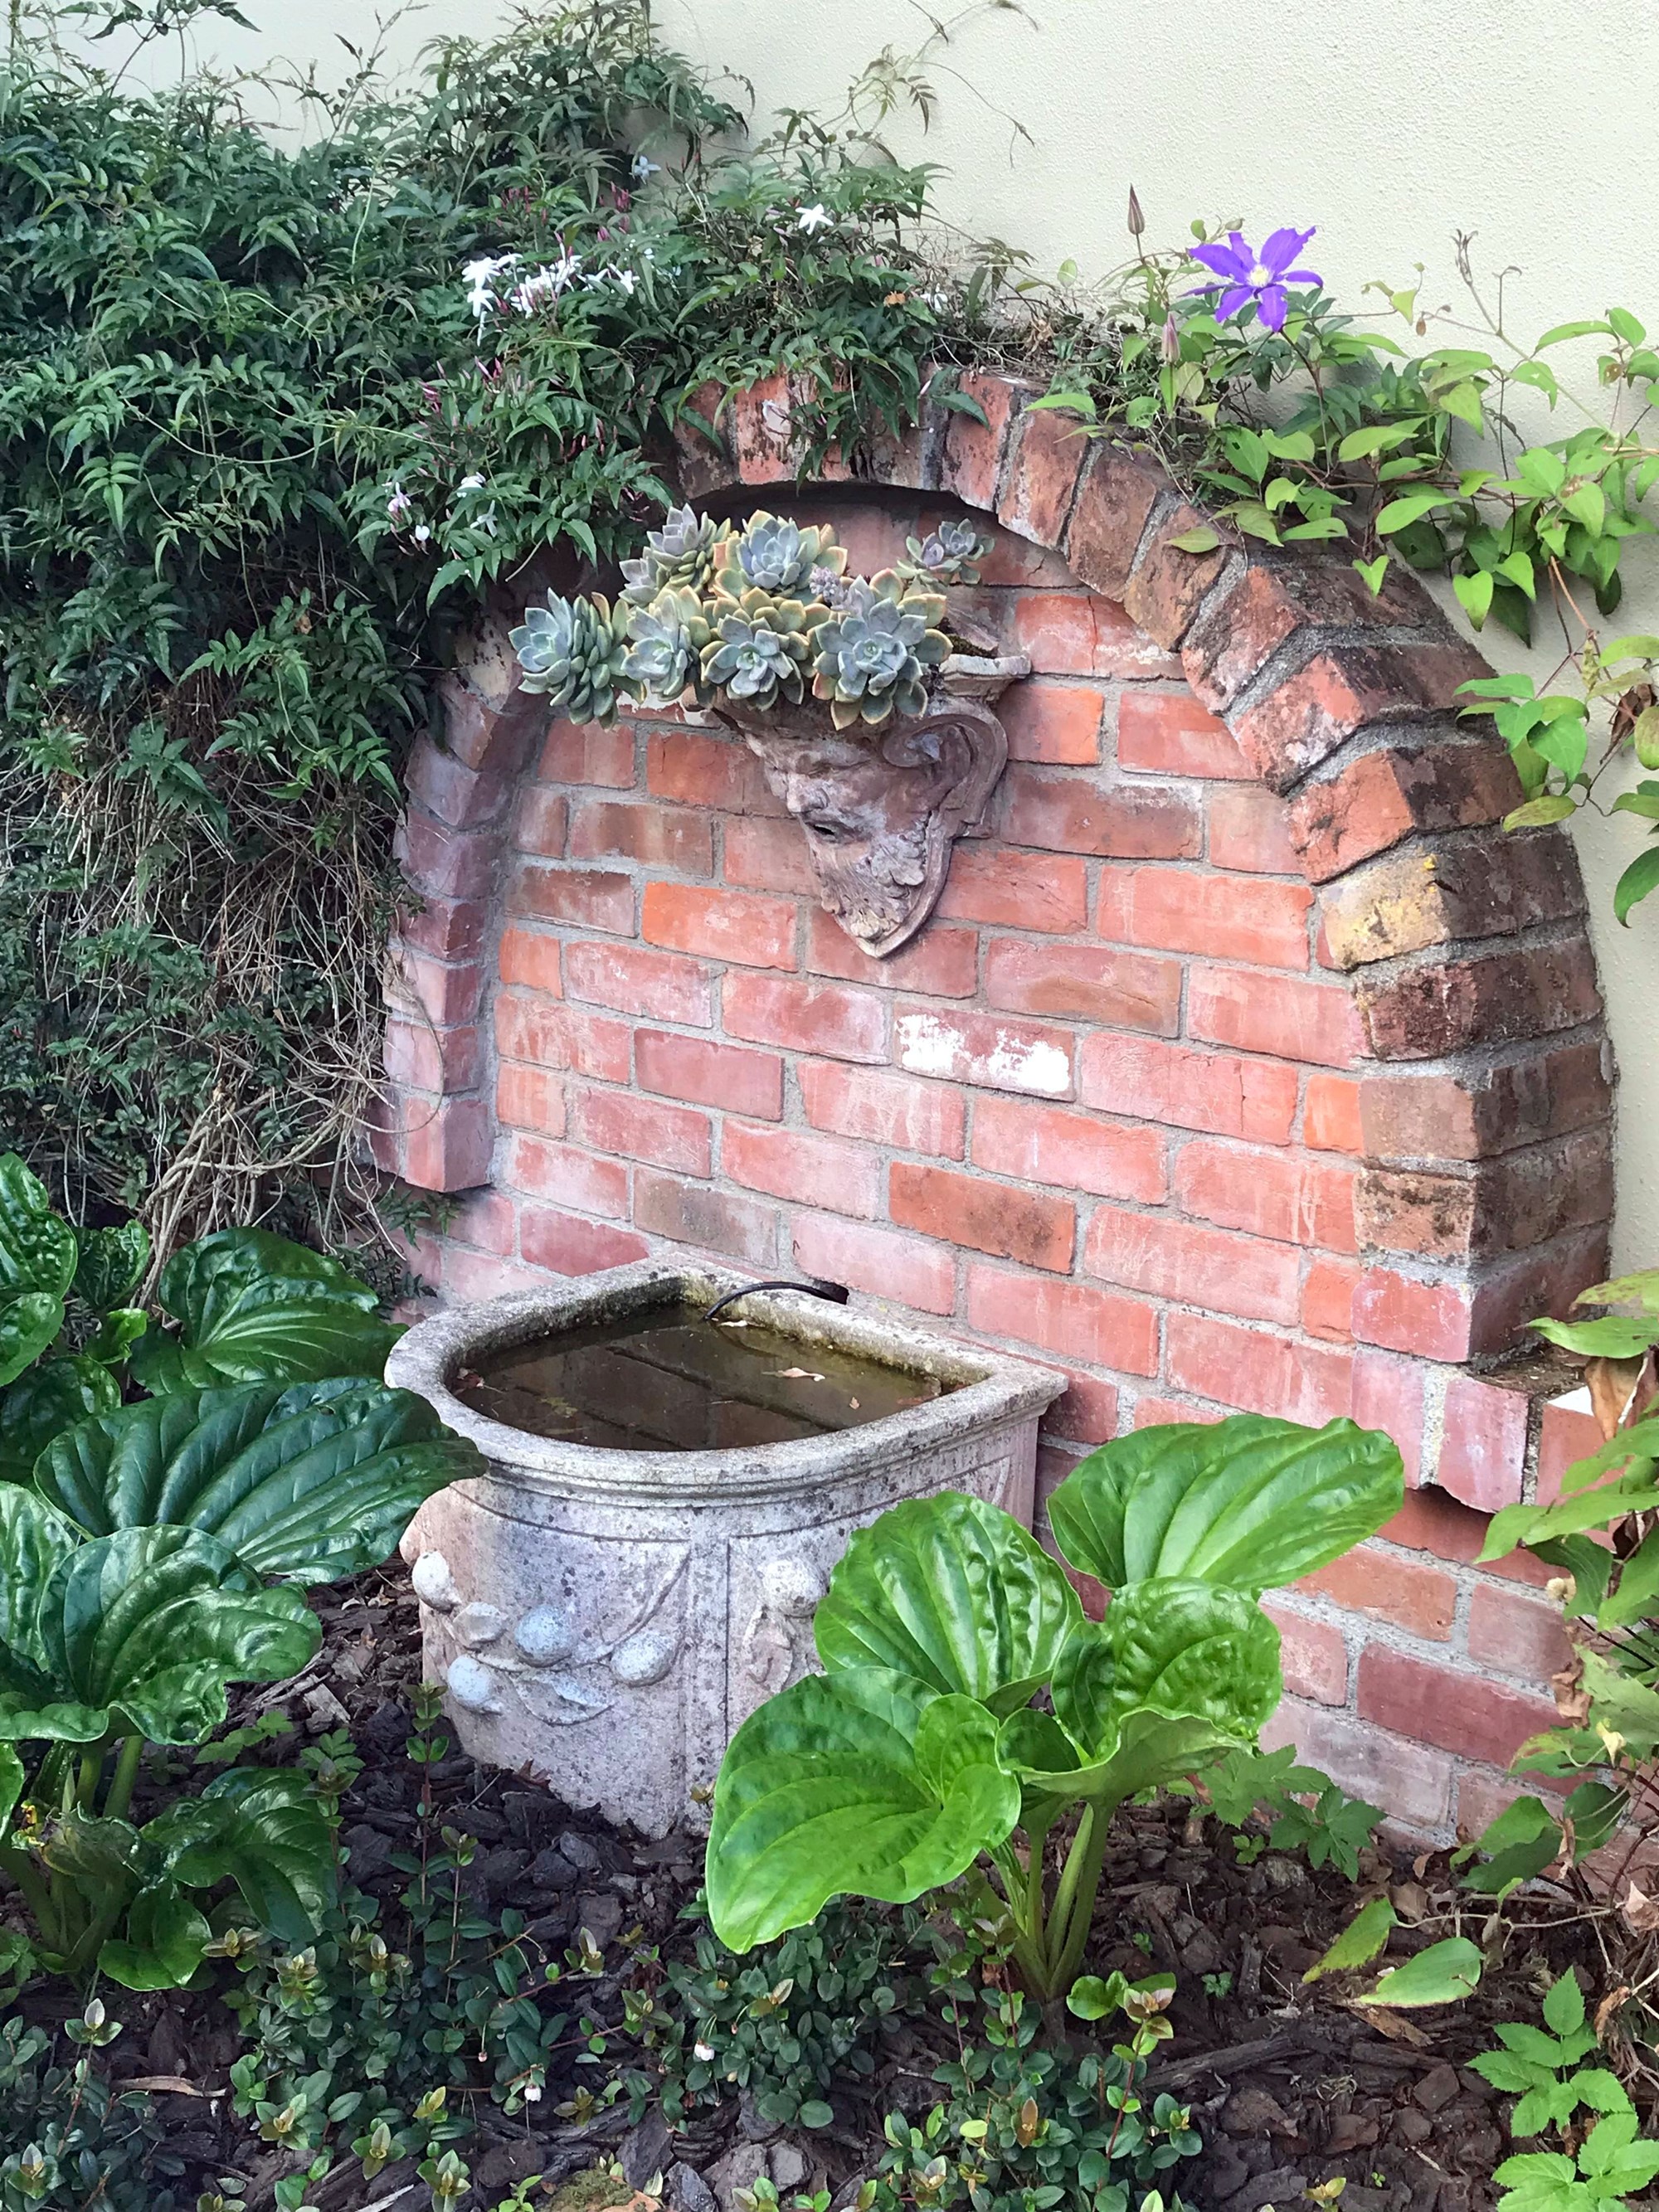 Gardens to visit - Broadoak